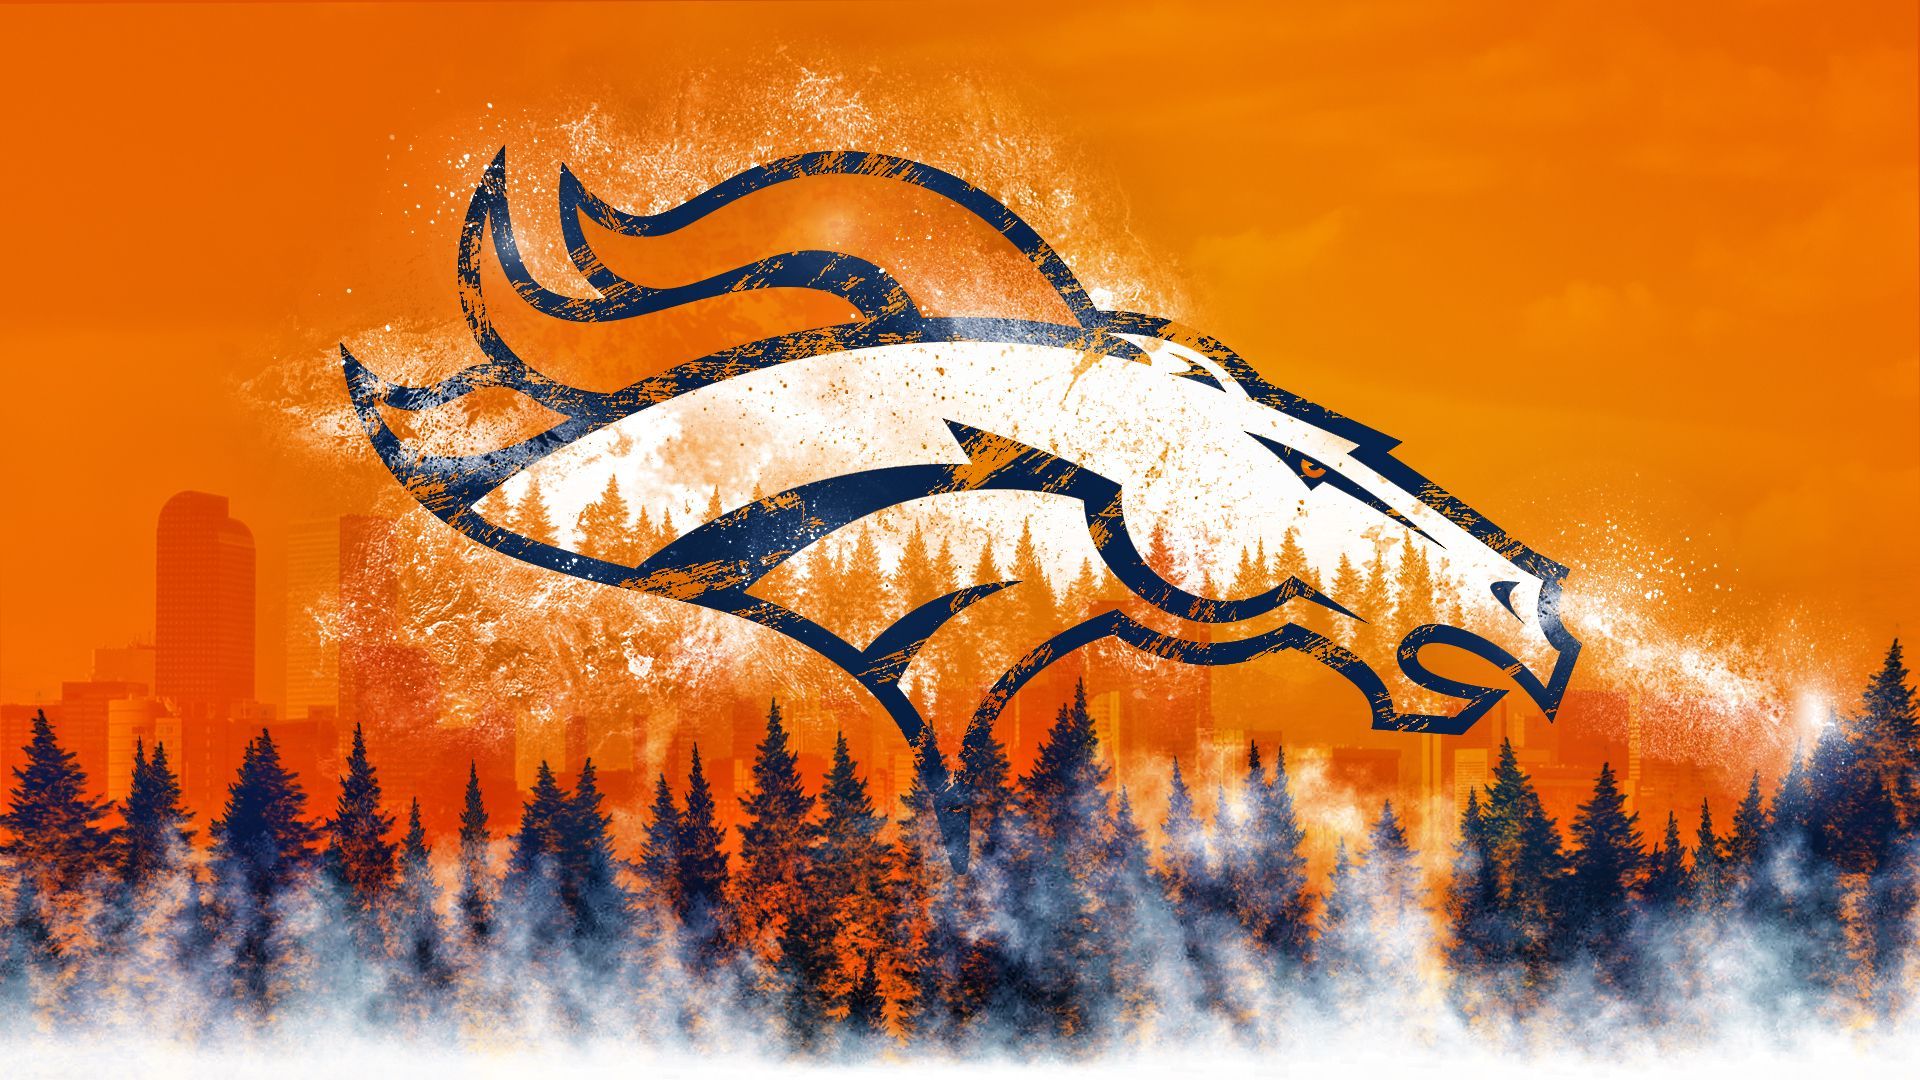 Denver Broncos Backgrounds on Wallpapers Vista